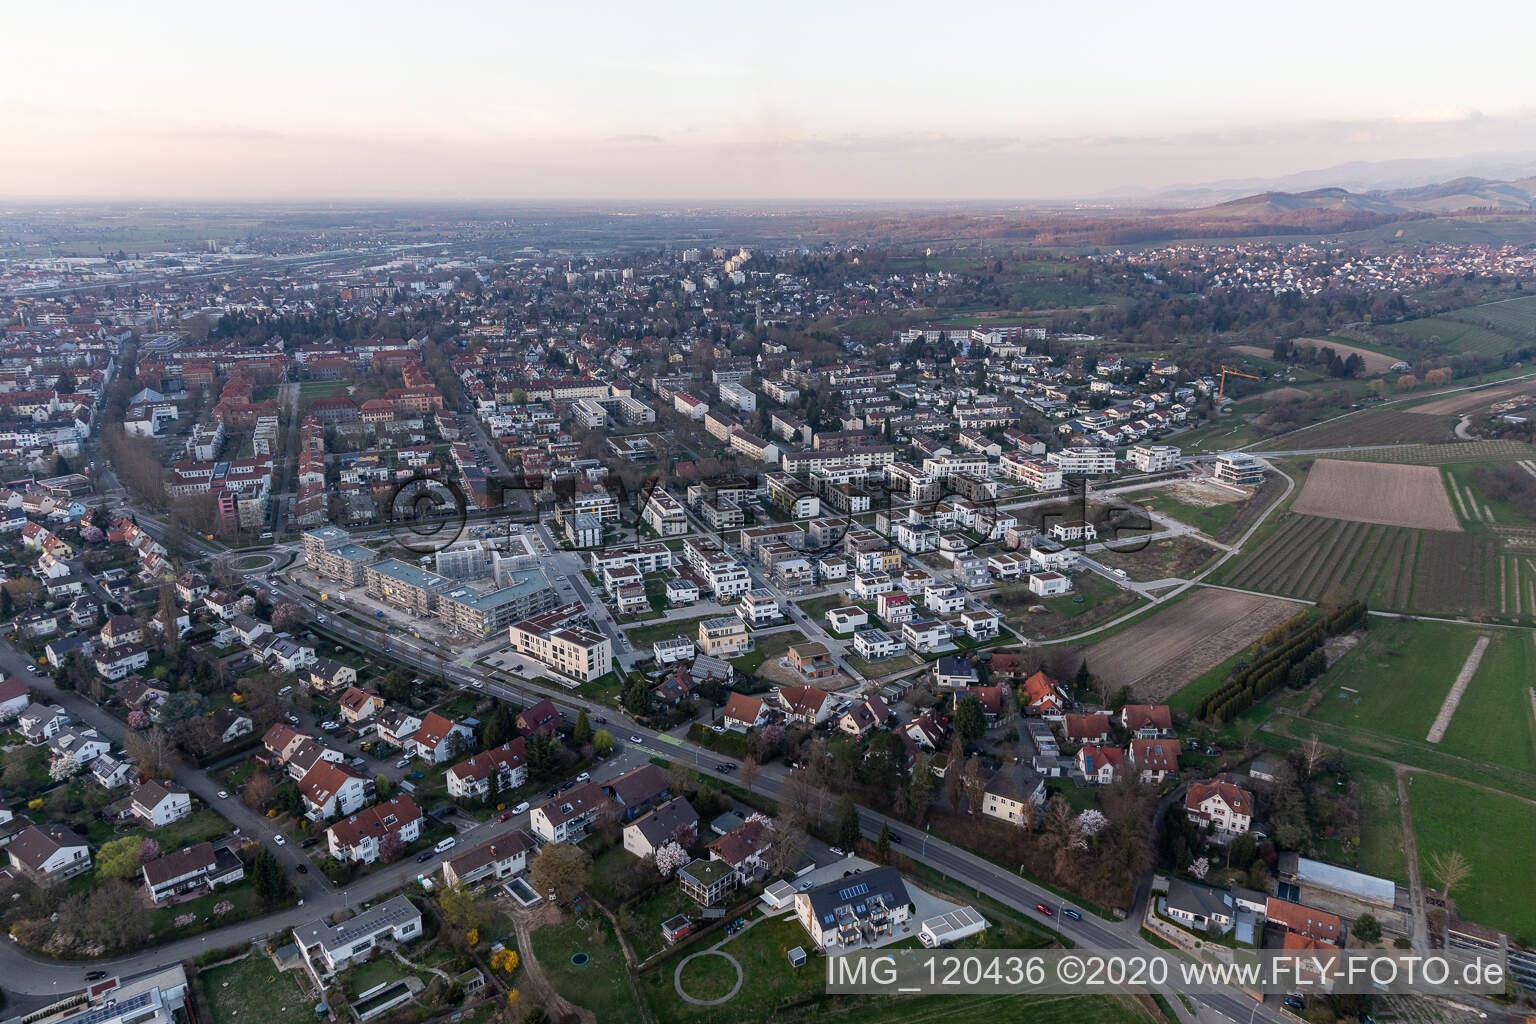 Photographie aérienne de Chantier de construction d'un nouveau quartier résidentiel dans le quartier de maisons mitoyennes Im Seidenfaden à Offenburg dans le département Bade-Wurtemberg, Allemagne